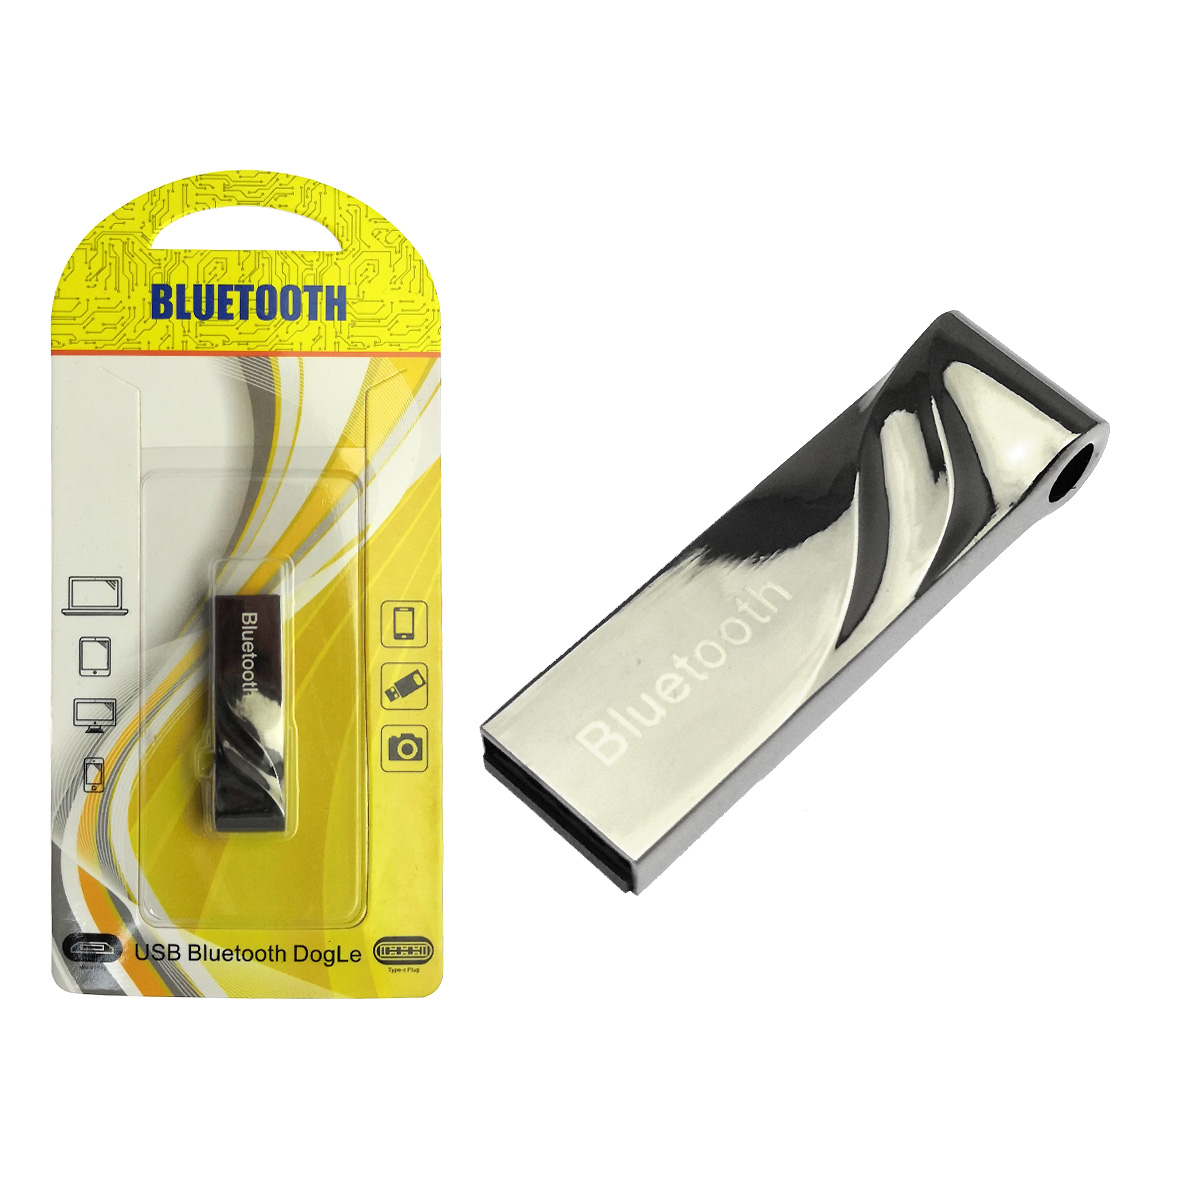 USB 2.0 Bluetooth адаптер 4.0+ERD LONG, с поддержкой протоколов A2DP, AVRCP, HFP и HSP, радиус действия 8-10 метров, цвет черный